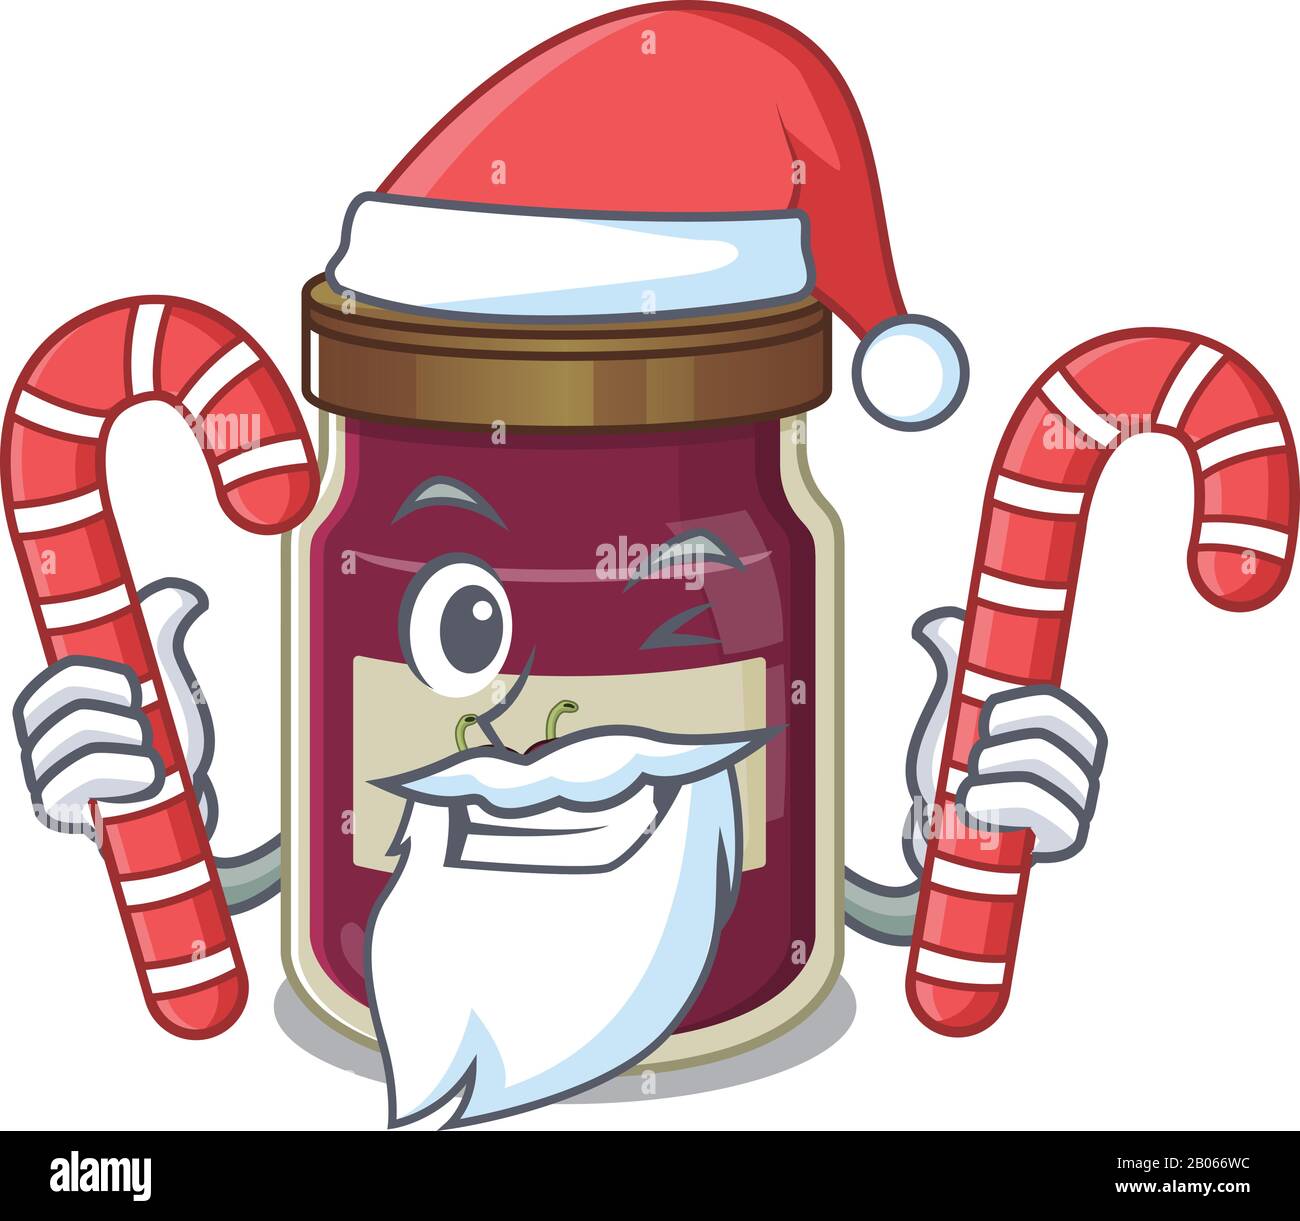 Confiture de prune personnage de dessin animé portant un costume de Père Noël apportant une friandise Illustration de Vecteur